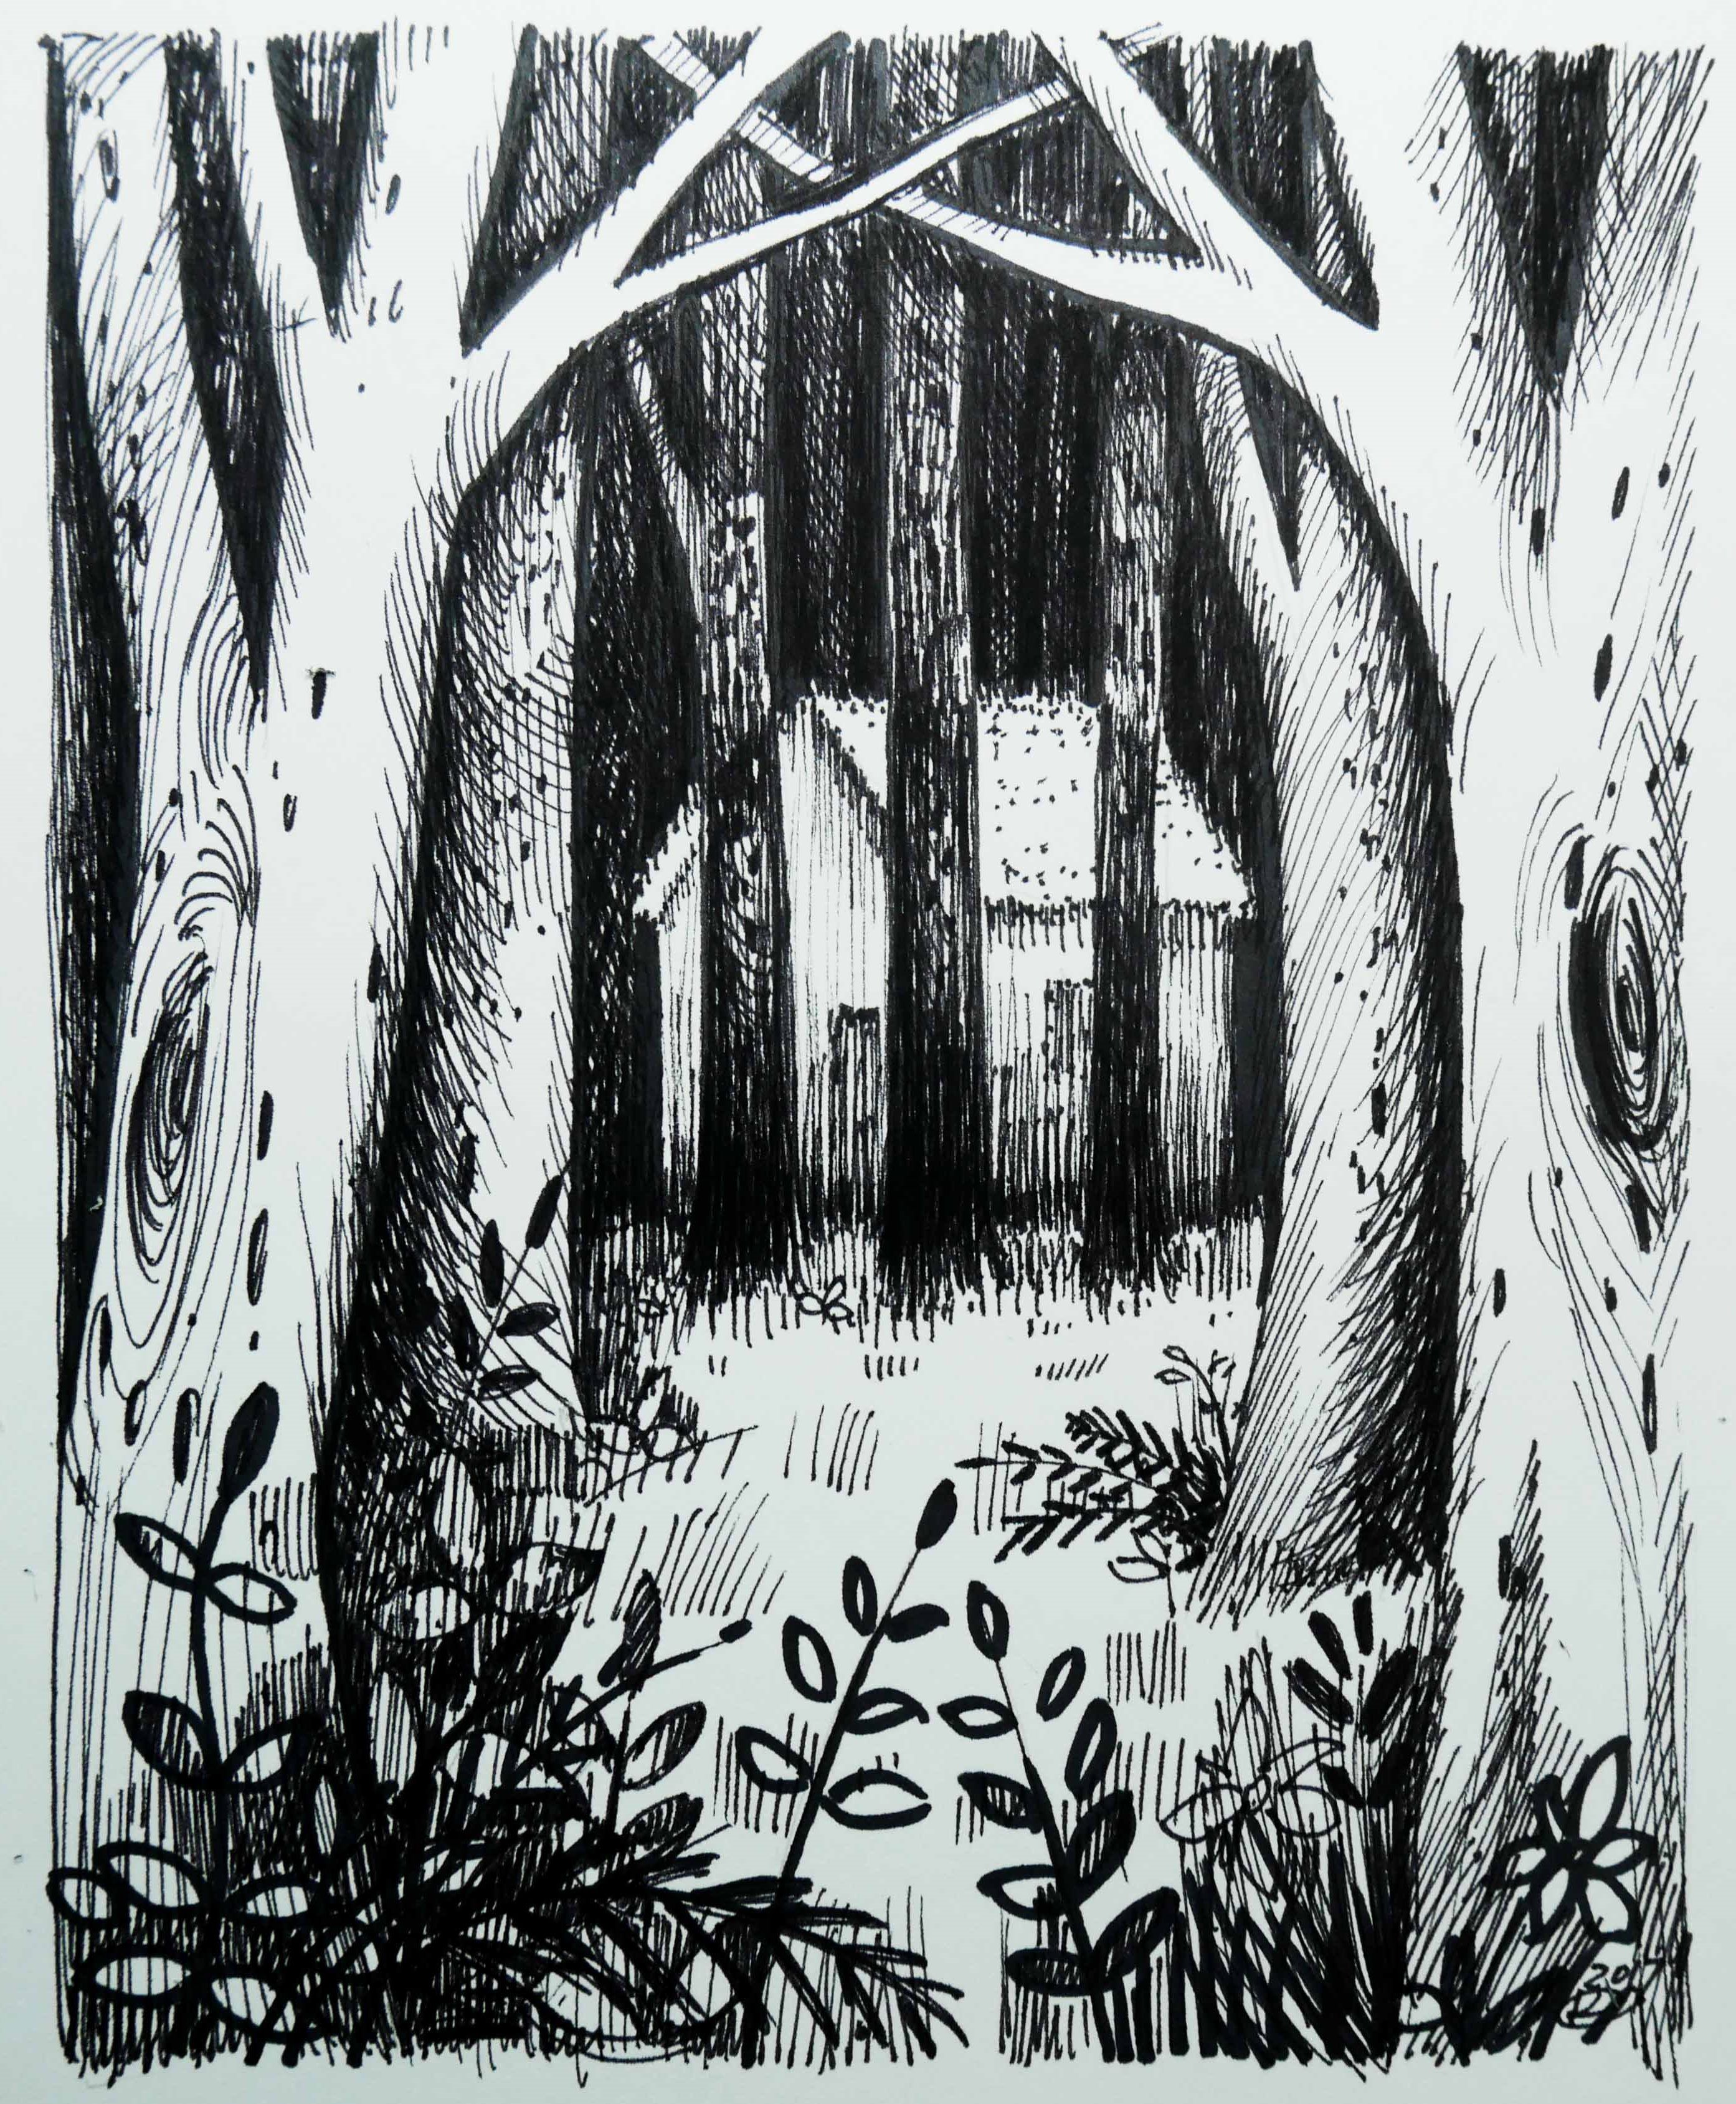 Forest Sketch Images - Free Download on Freepik